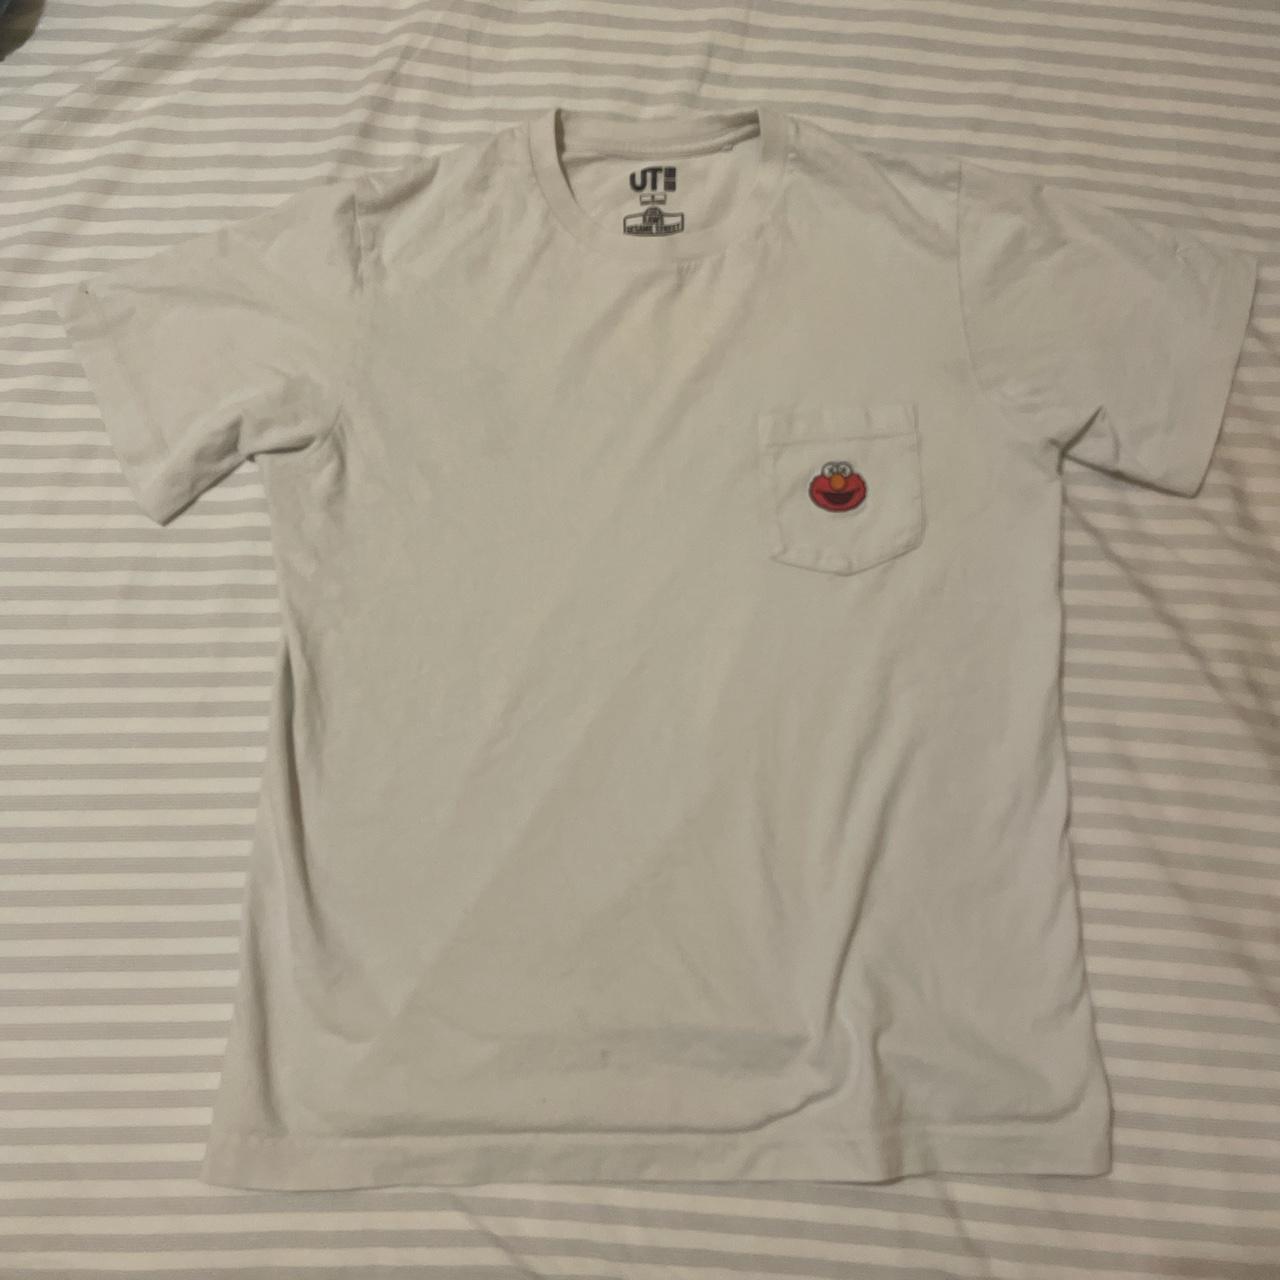 Kaws Men's White T-shirt